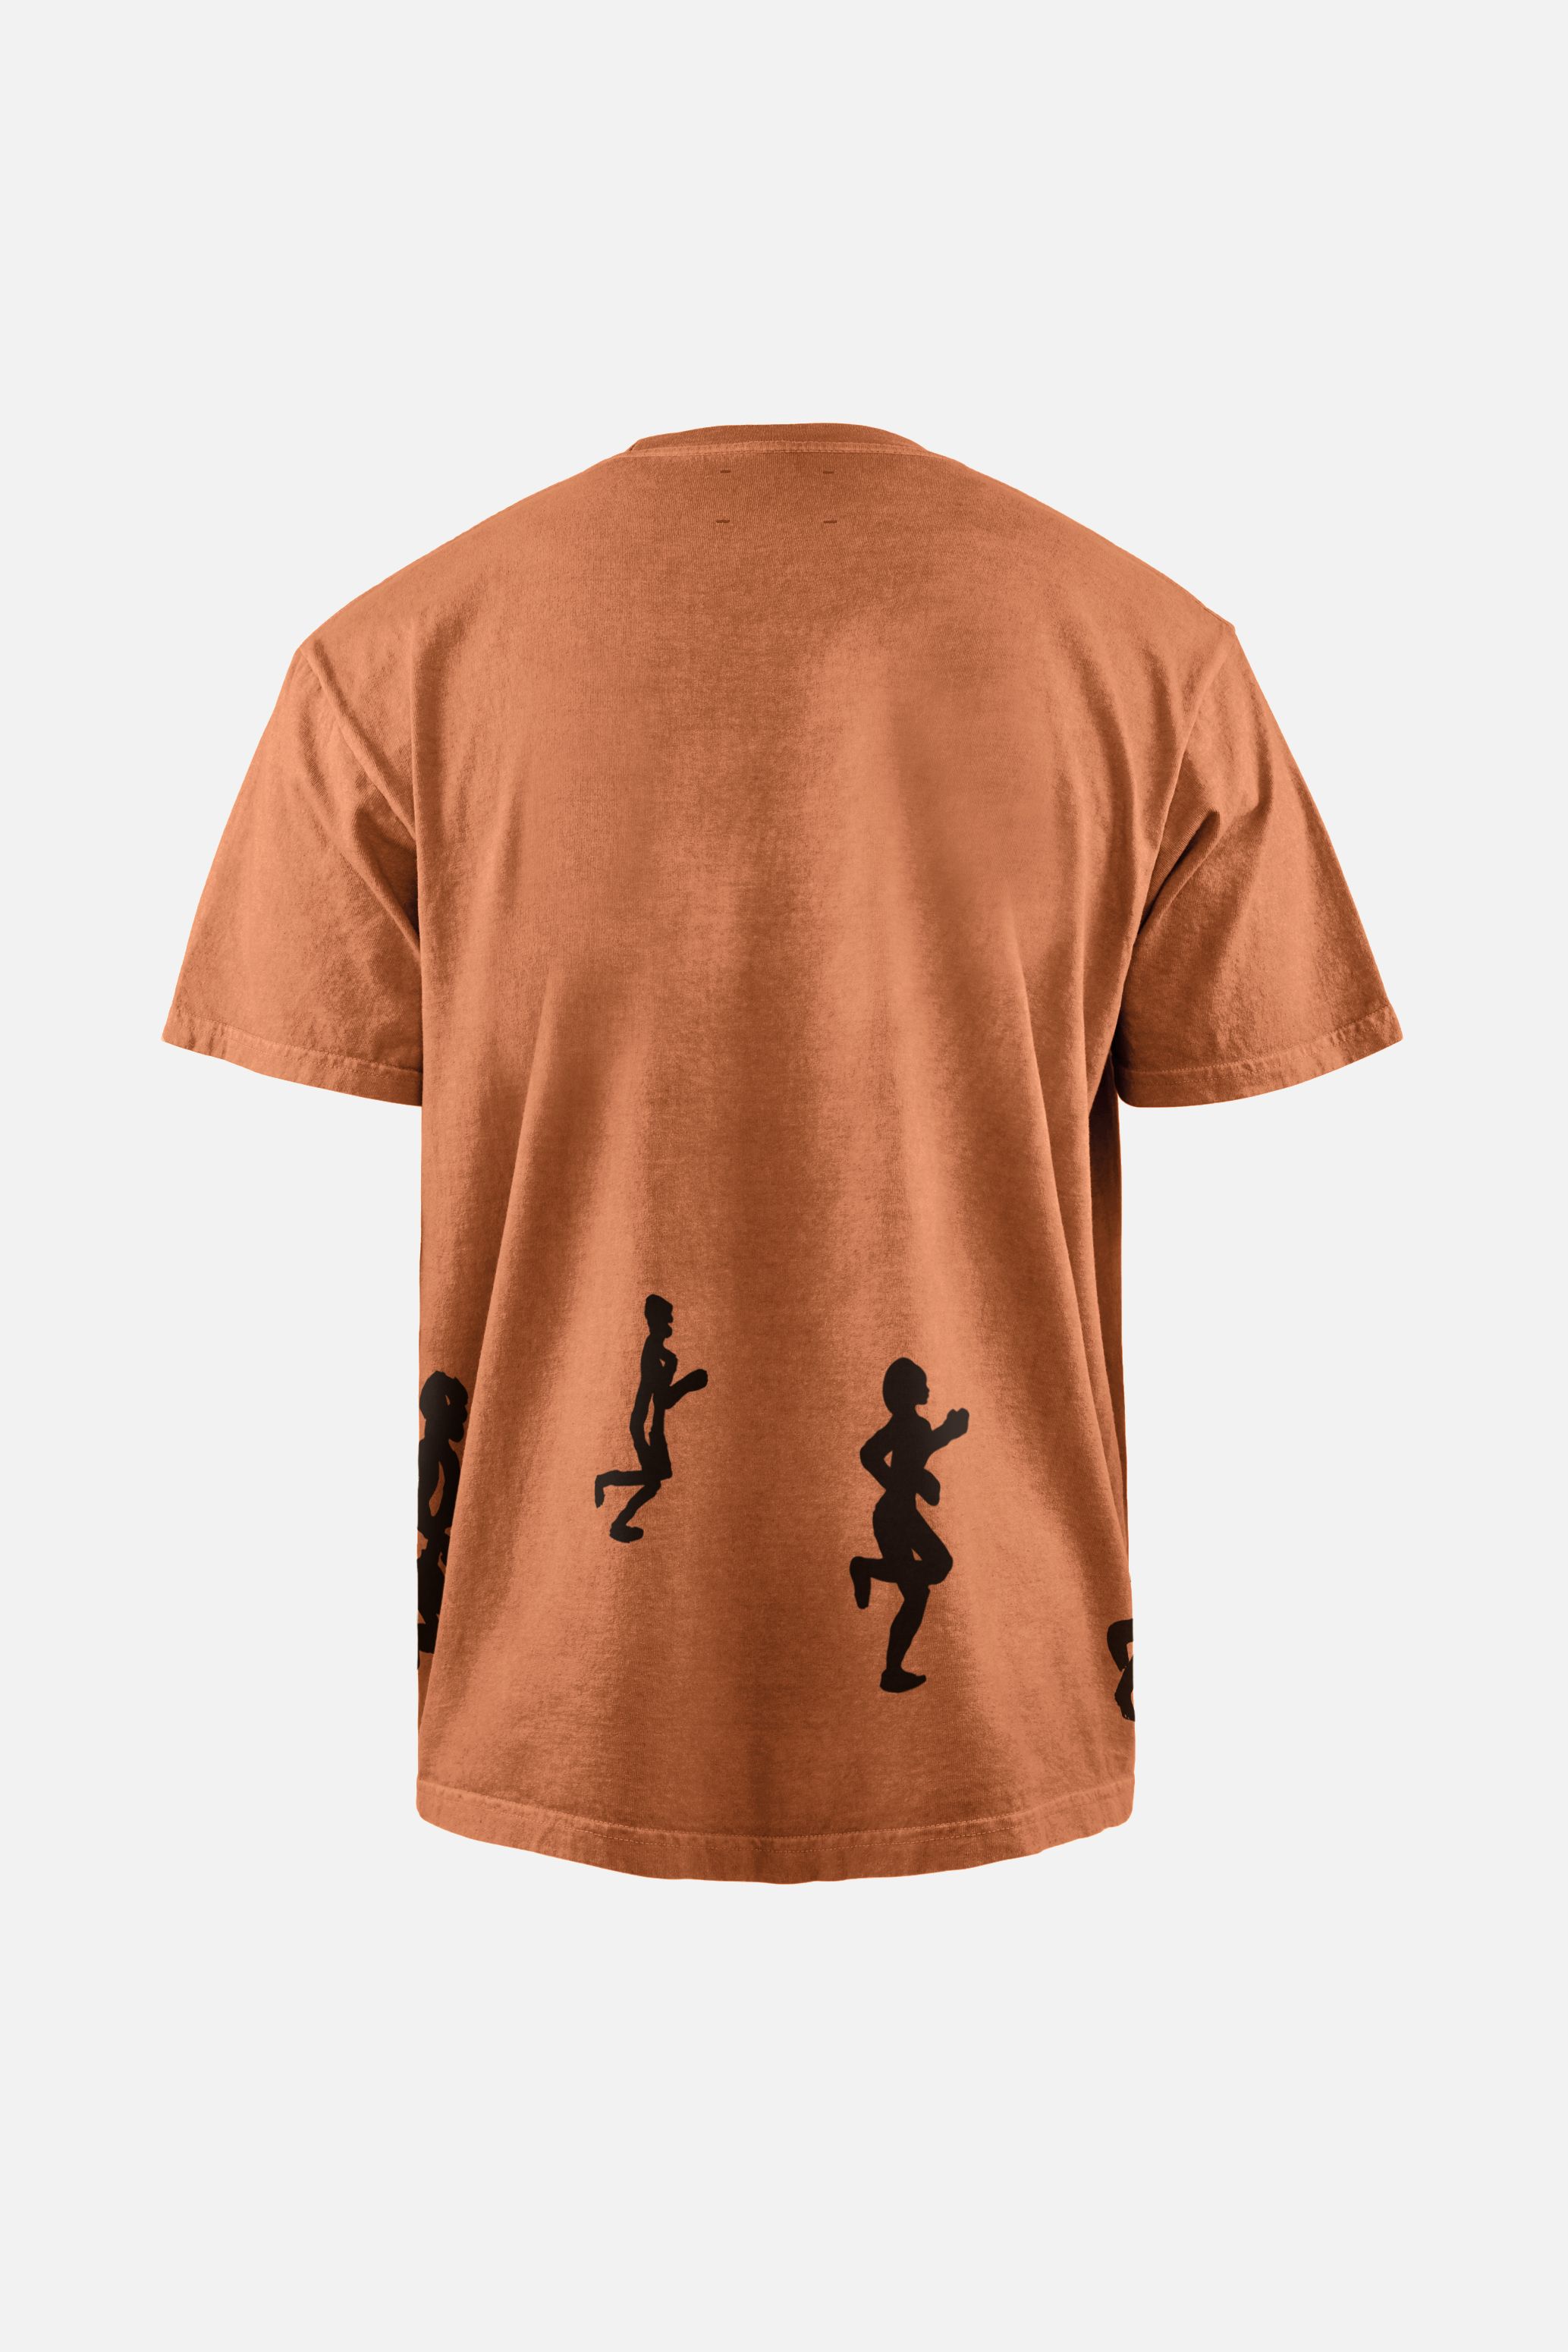 Karuna Short Sleeve T-Shirt, Rust Psychic Runners